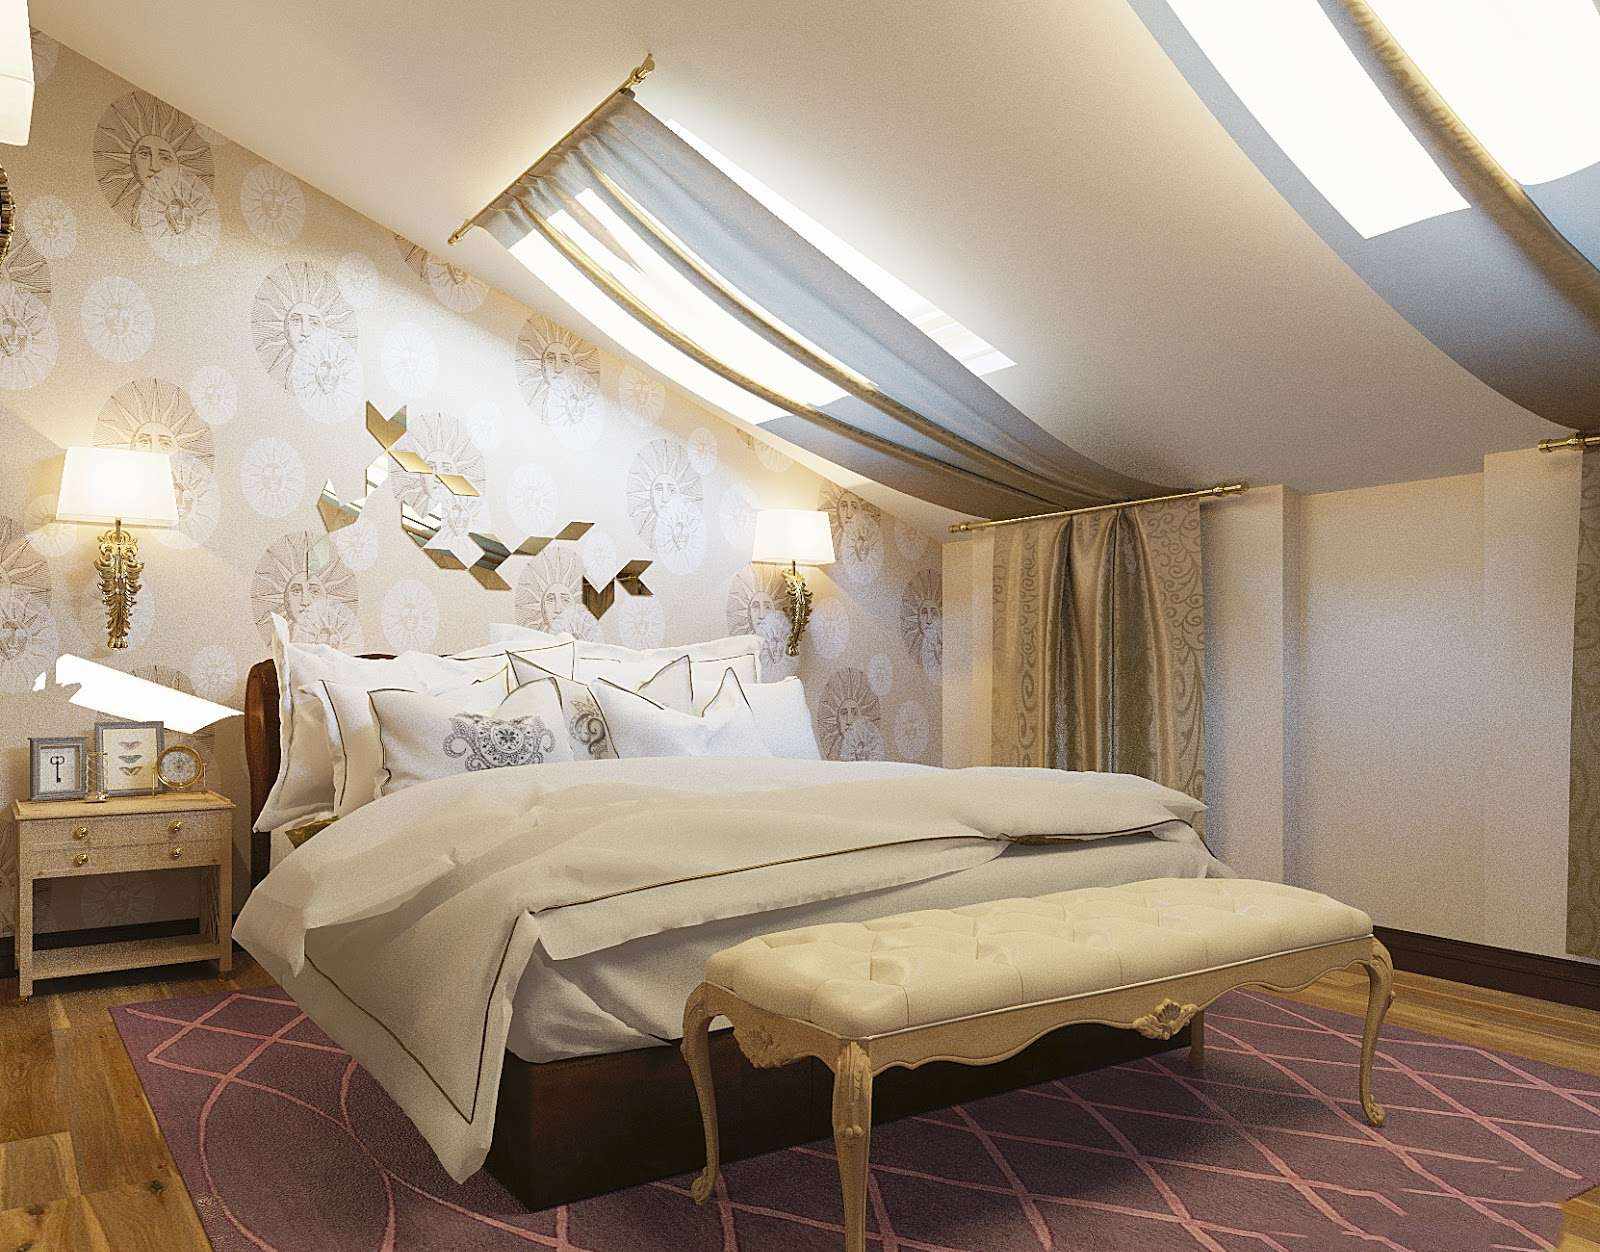 l'idea di una camera da letto in stile luminoso in soffitta